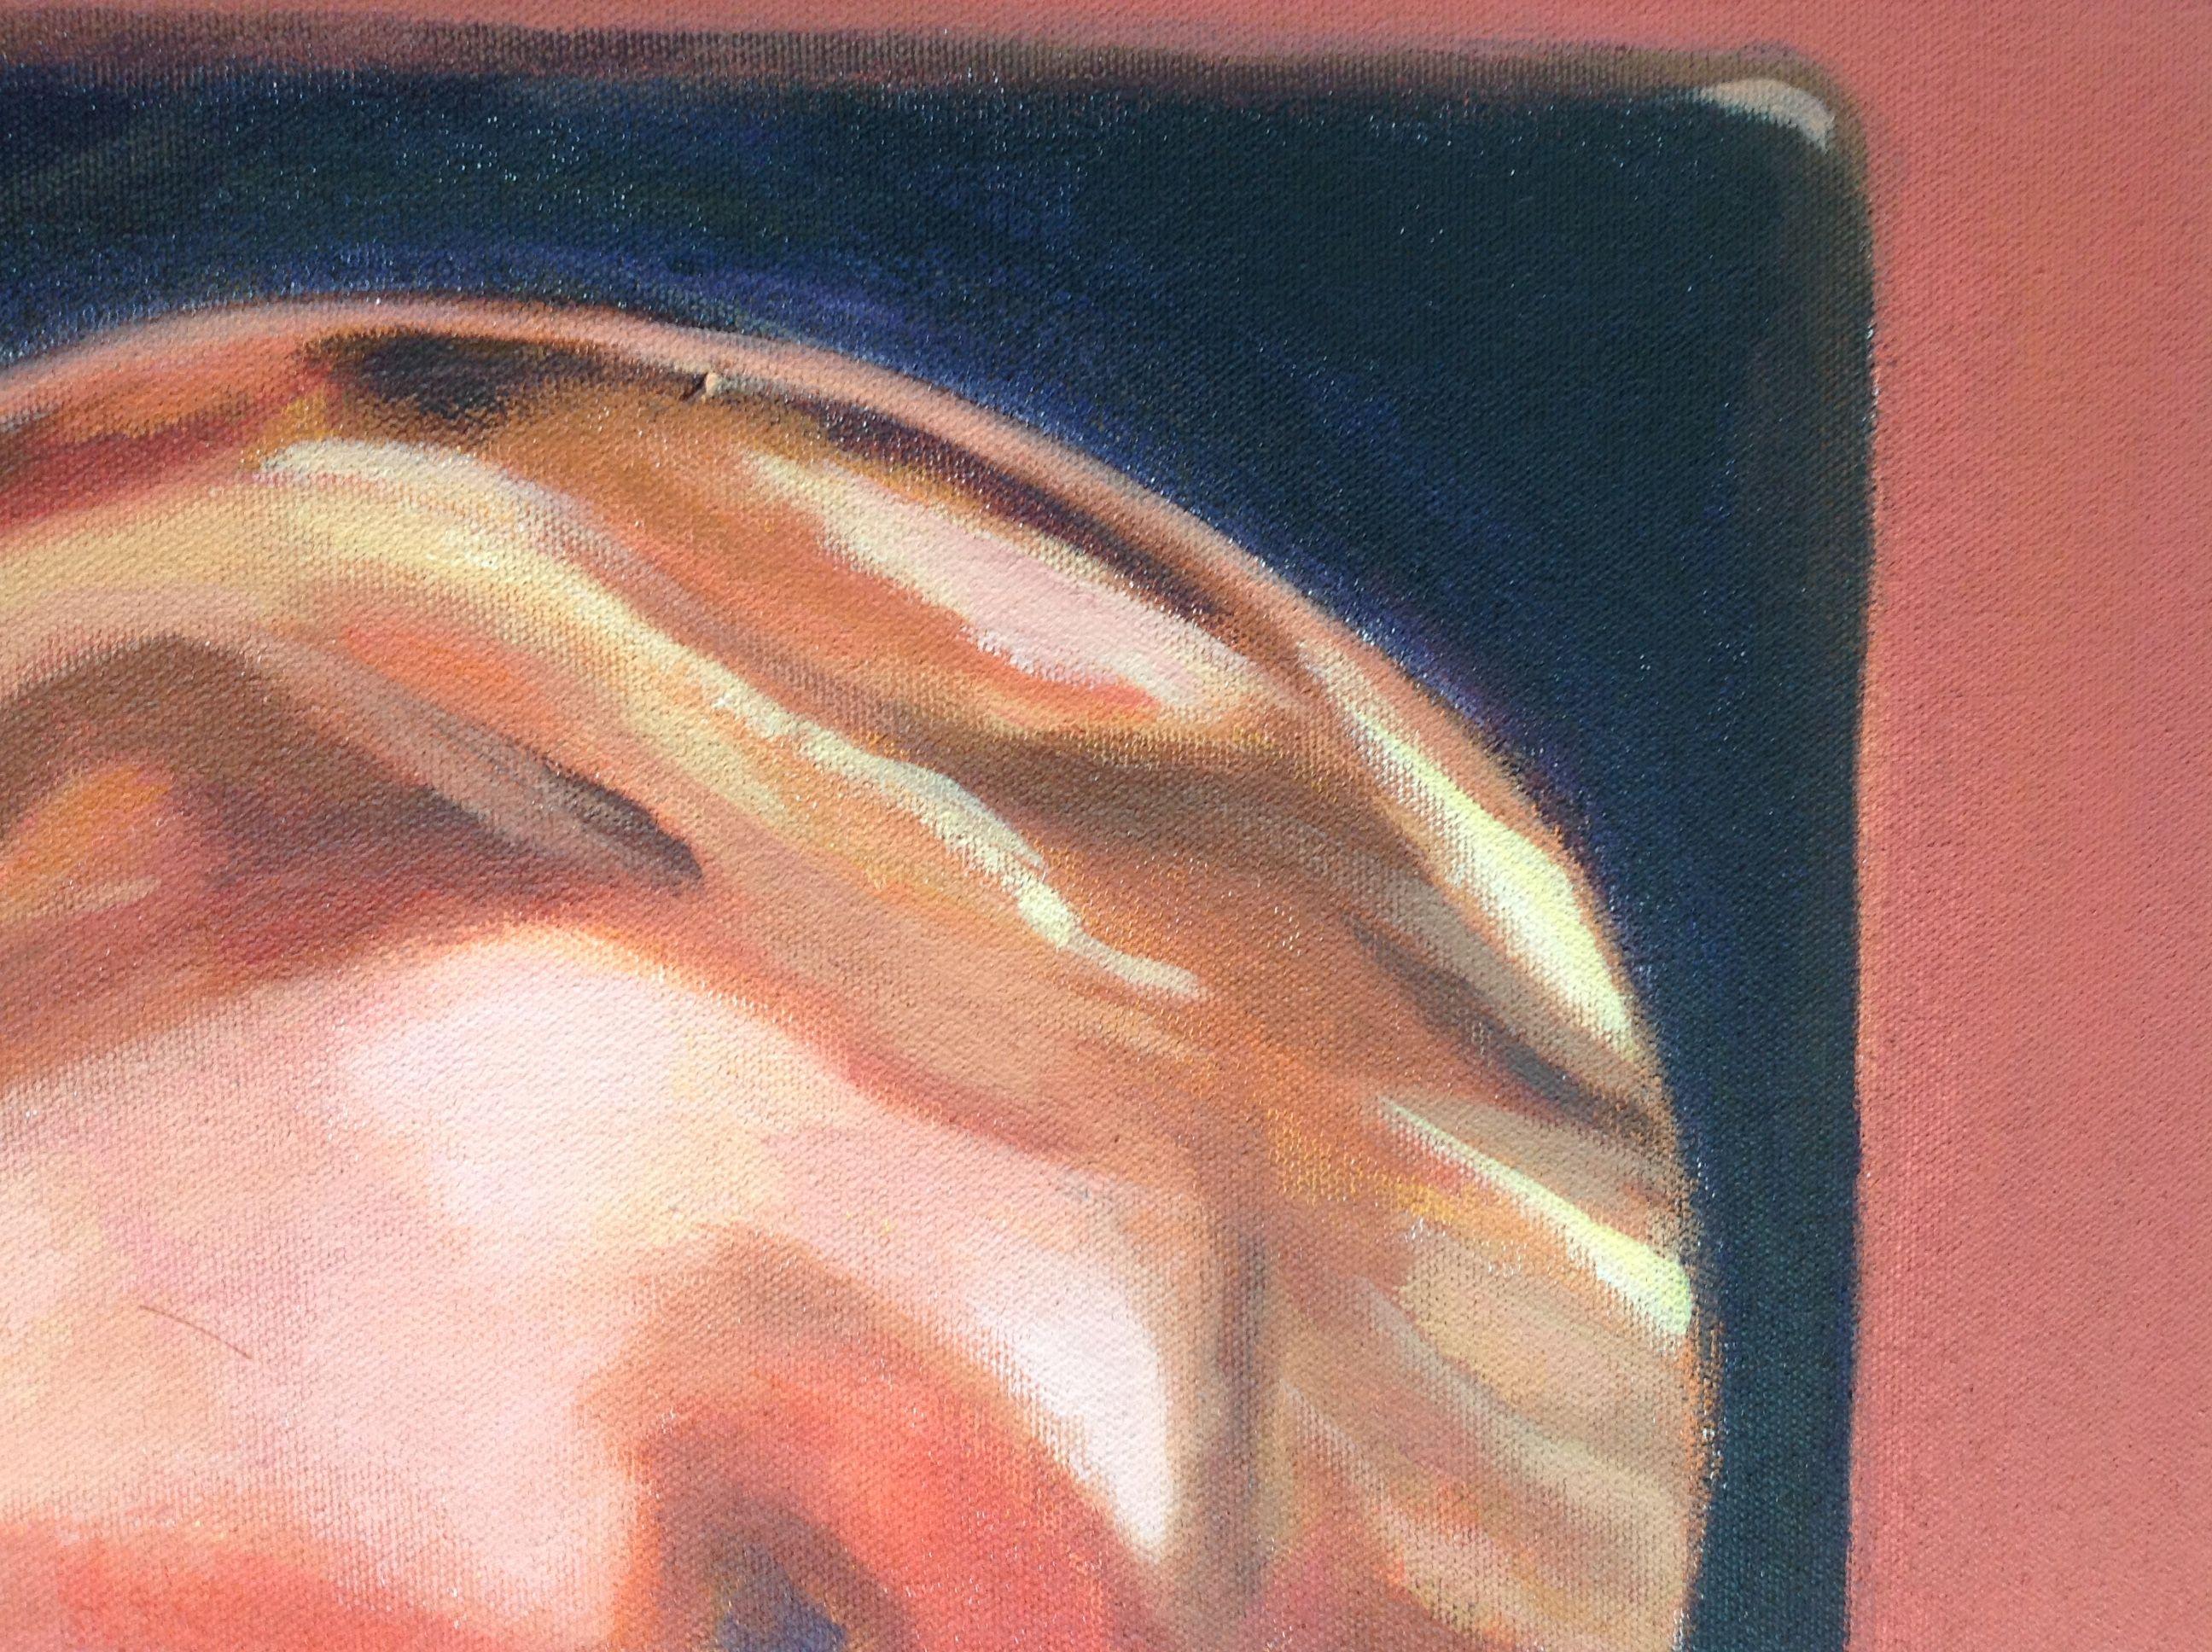 Diese Arbeit auf Leinwand mit Acrylfarben. Stellt das Porträt einer jungen Frau dar, die sich selbst im Spiegel betrachtet und gleichzeitig den Betrachter beobachtet. Dabei wird eine bestimmte Palette von warmen Farben verwendet, von Rot bis Gelb. 